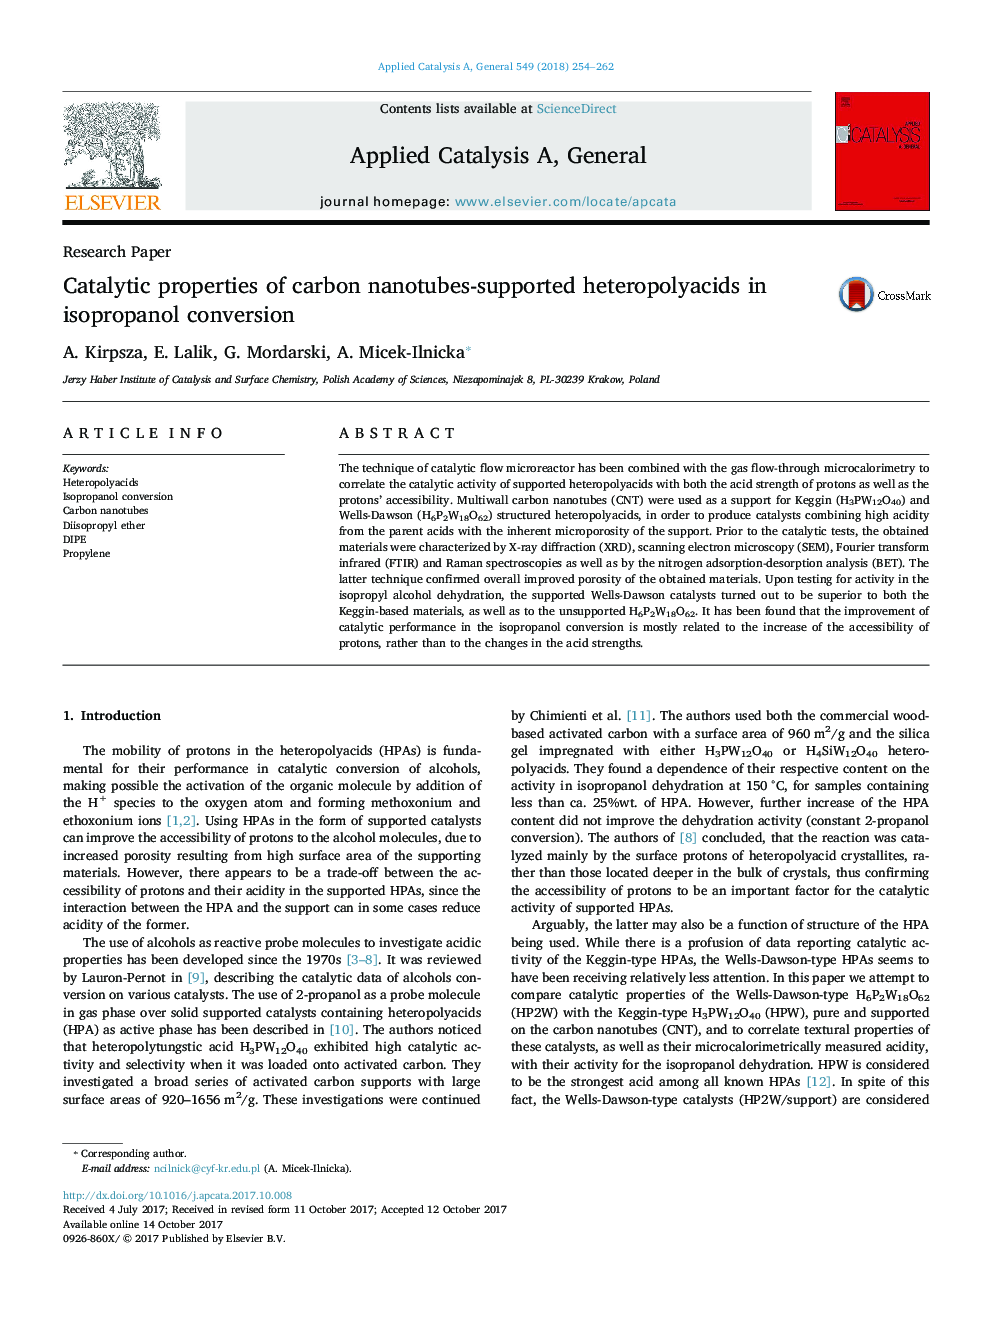 مقاله پژوهشی خواص کاتالیتی نانولوله های کربنی - هیدروپلیکیک های پشتیبانی شده در تبدیل ایزوپروپانول